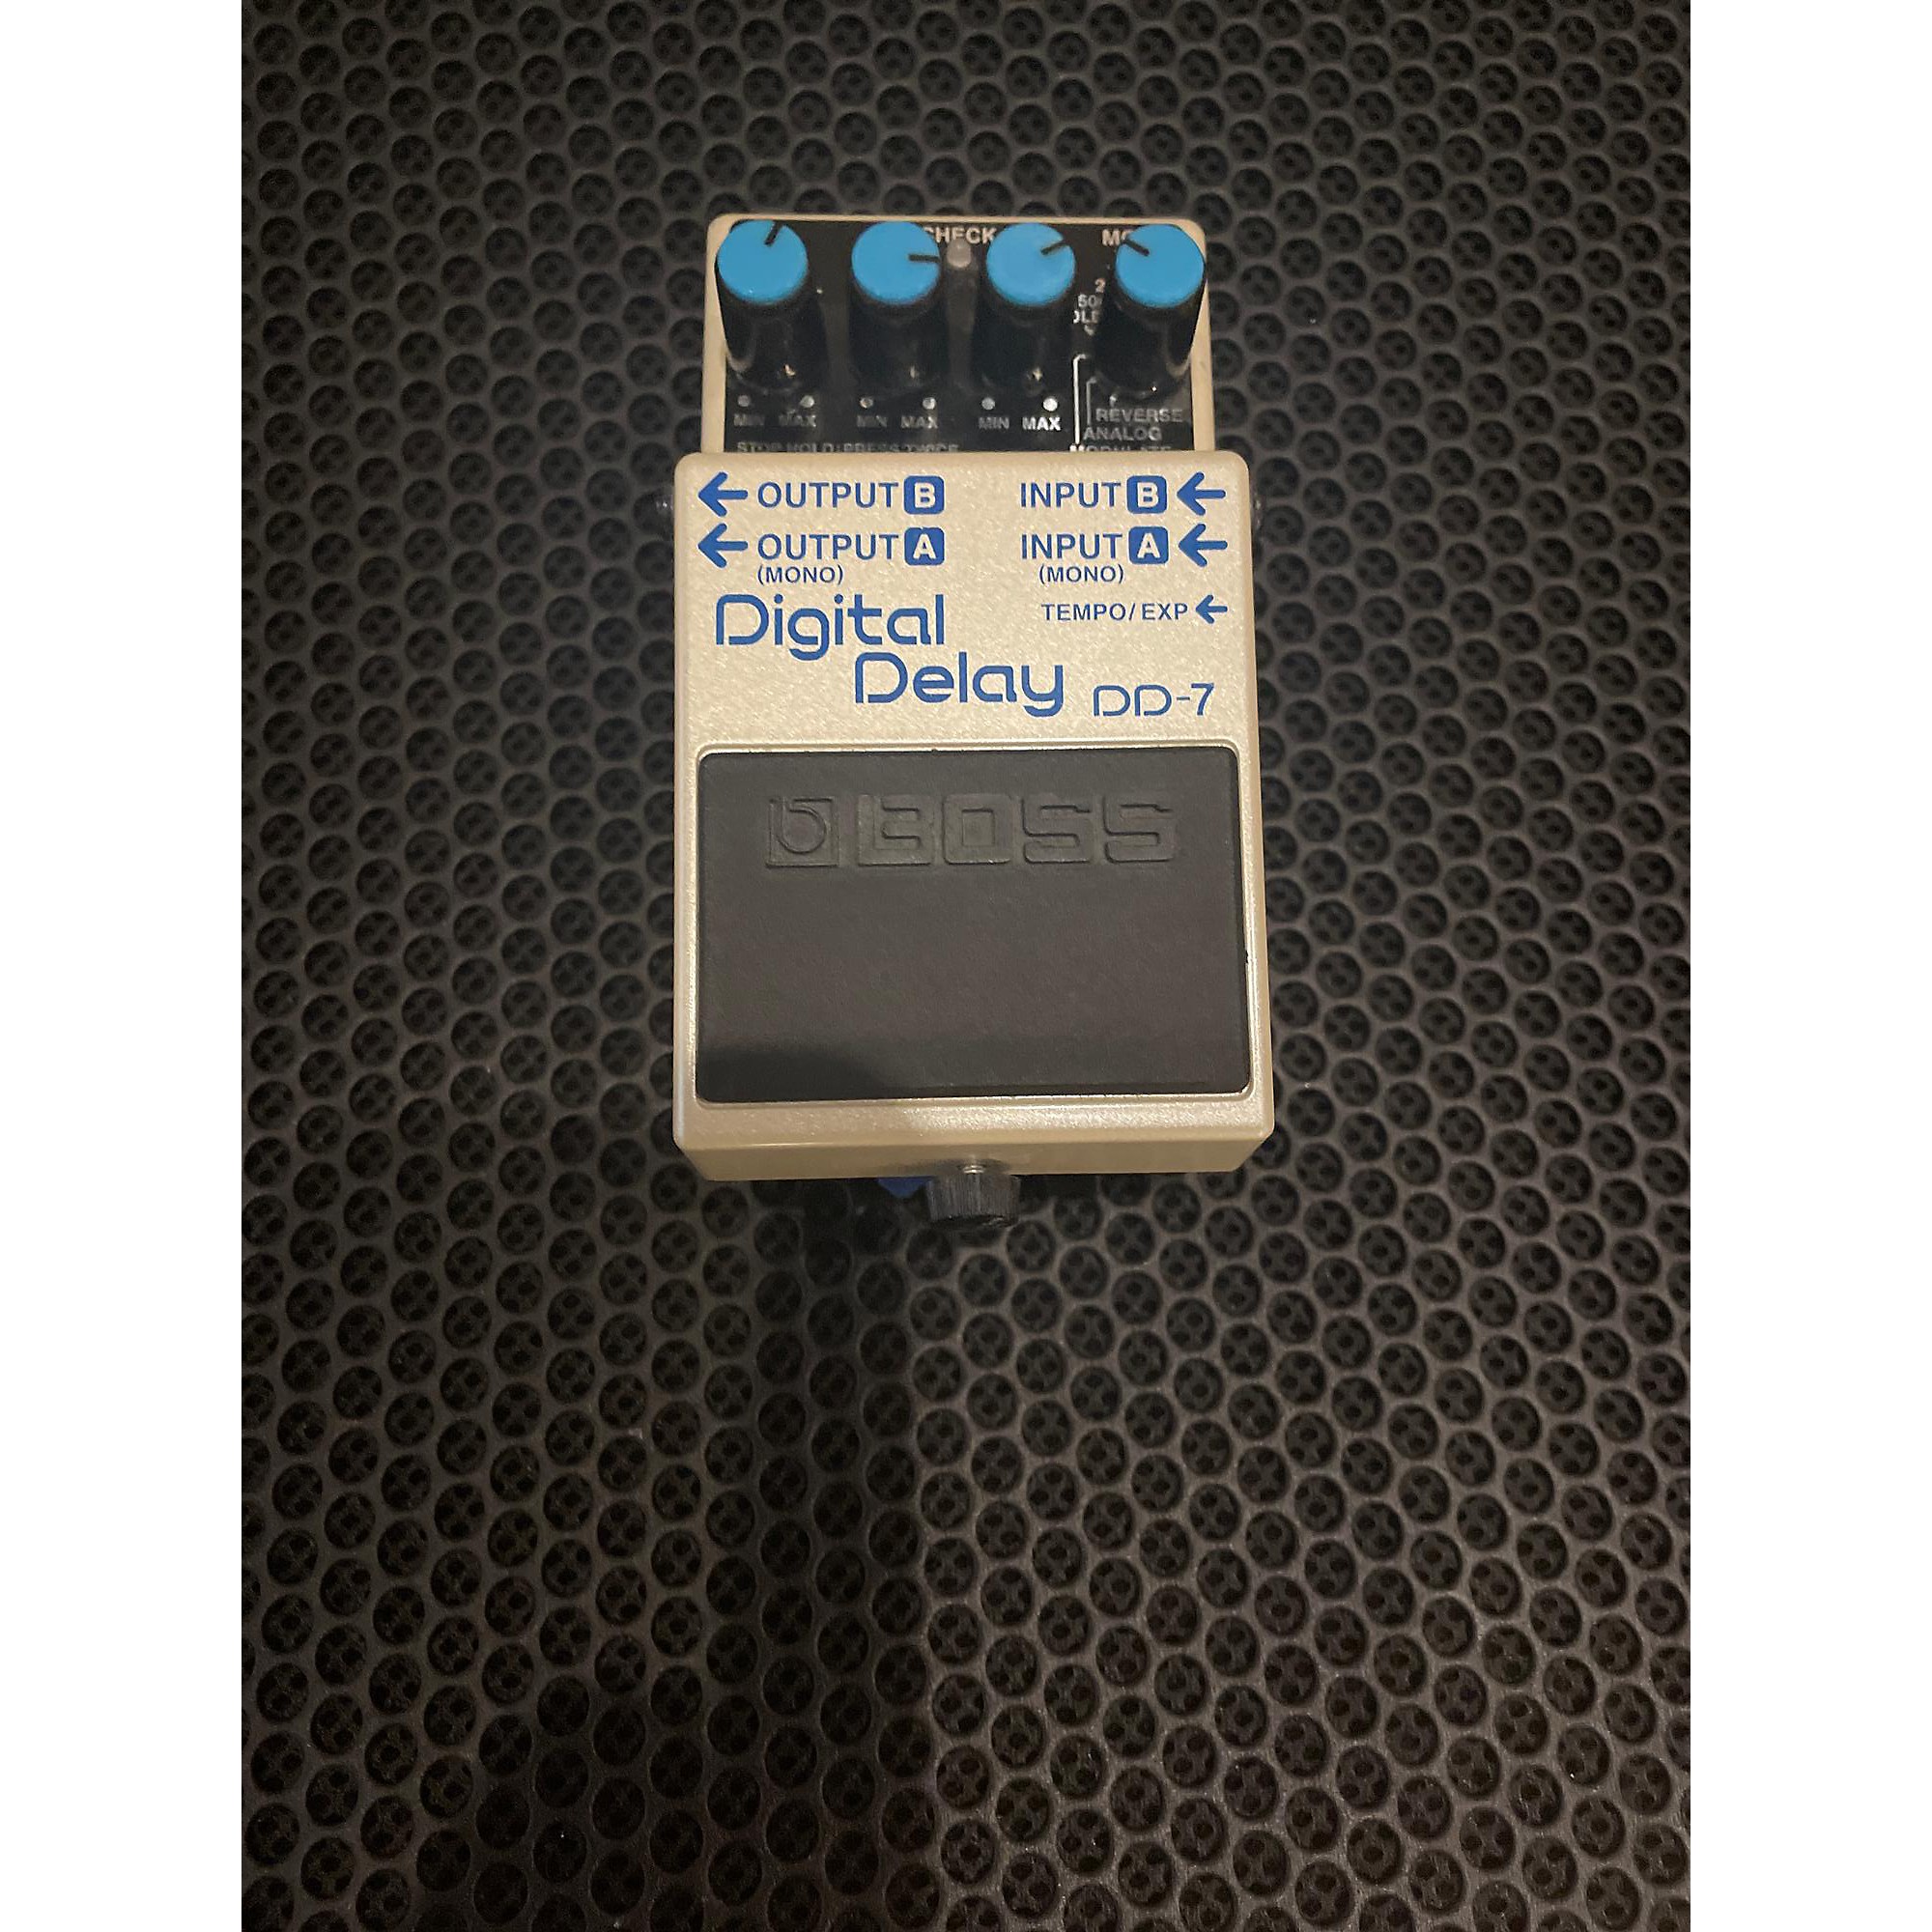 Used BOSS DD7 Digital Delay Effect Pedal